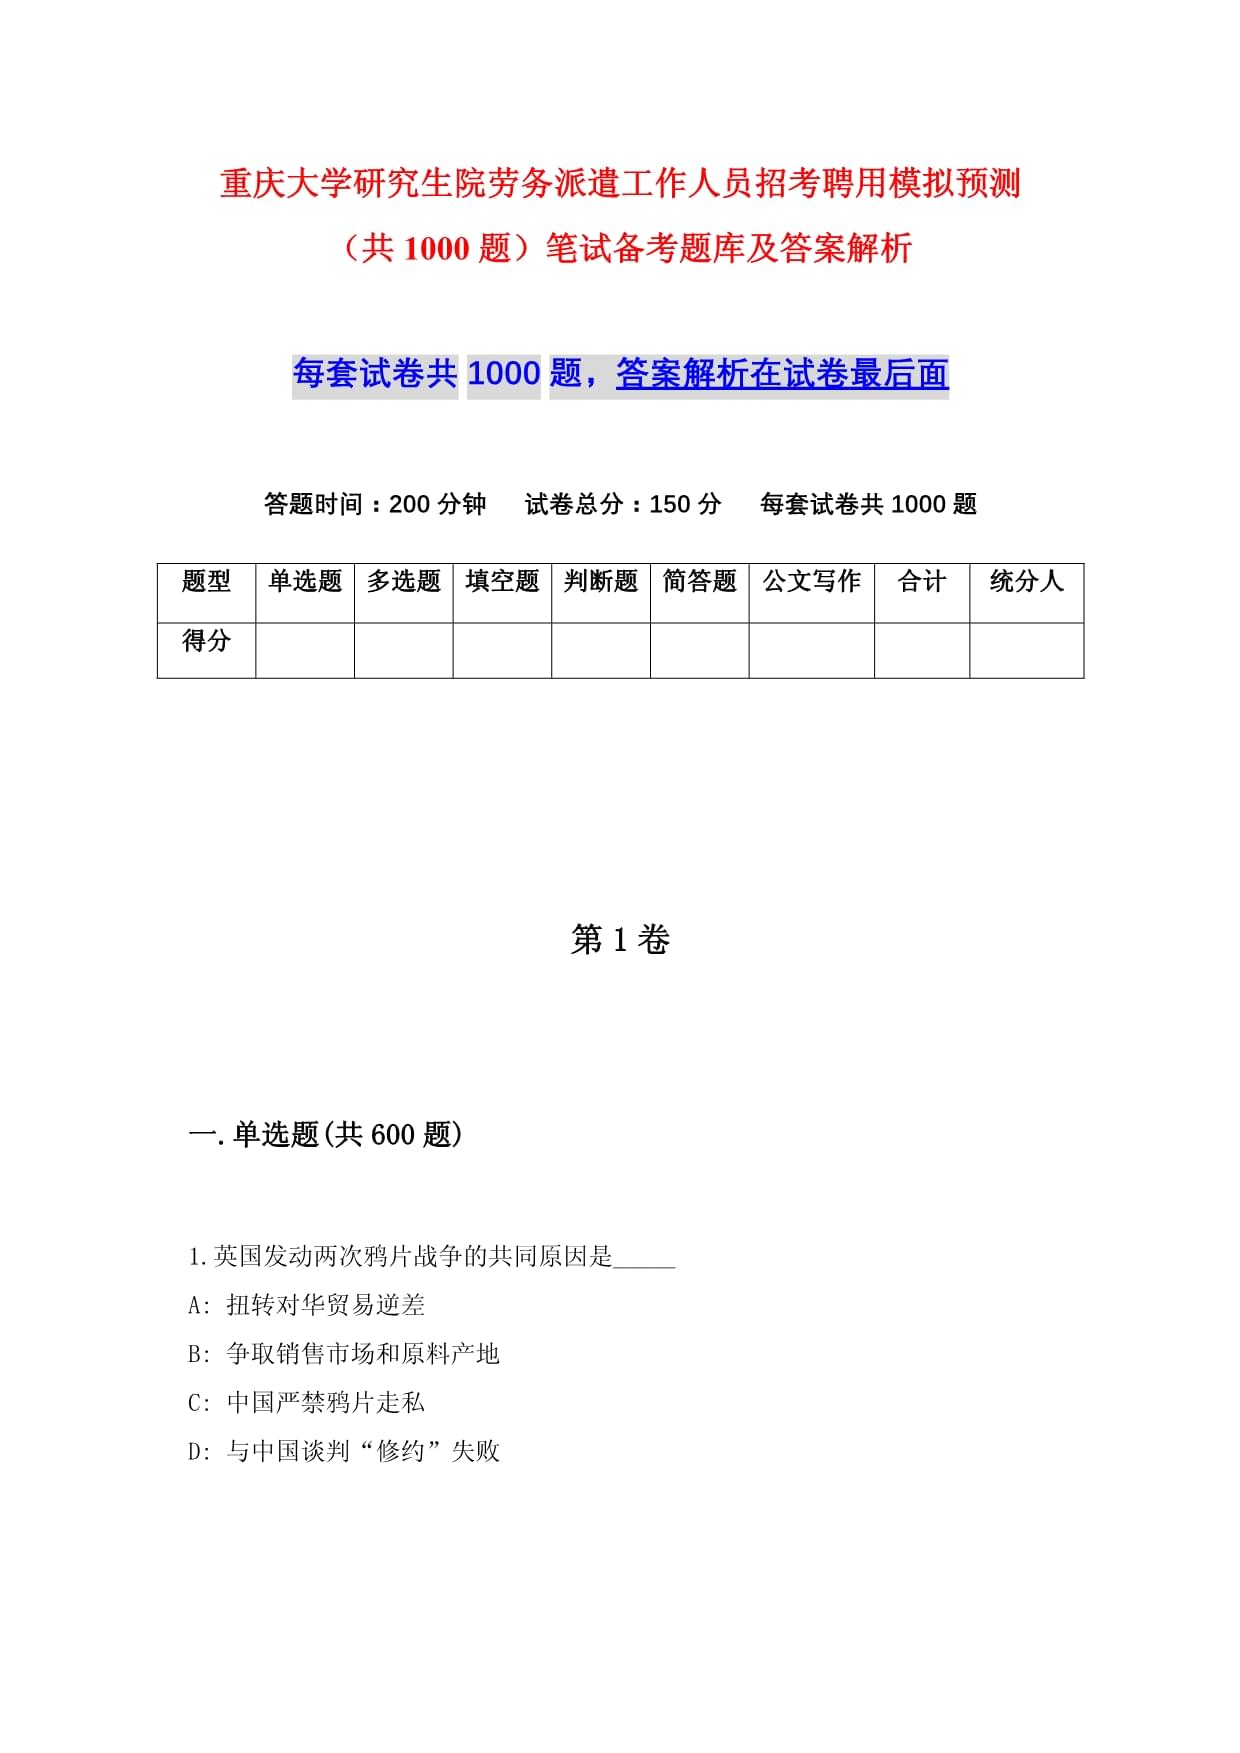 重庆大学研究生院劳务派遣工作人员招考聘用模拟预测(共1000题)笔试备考题库及答案解析